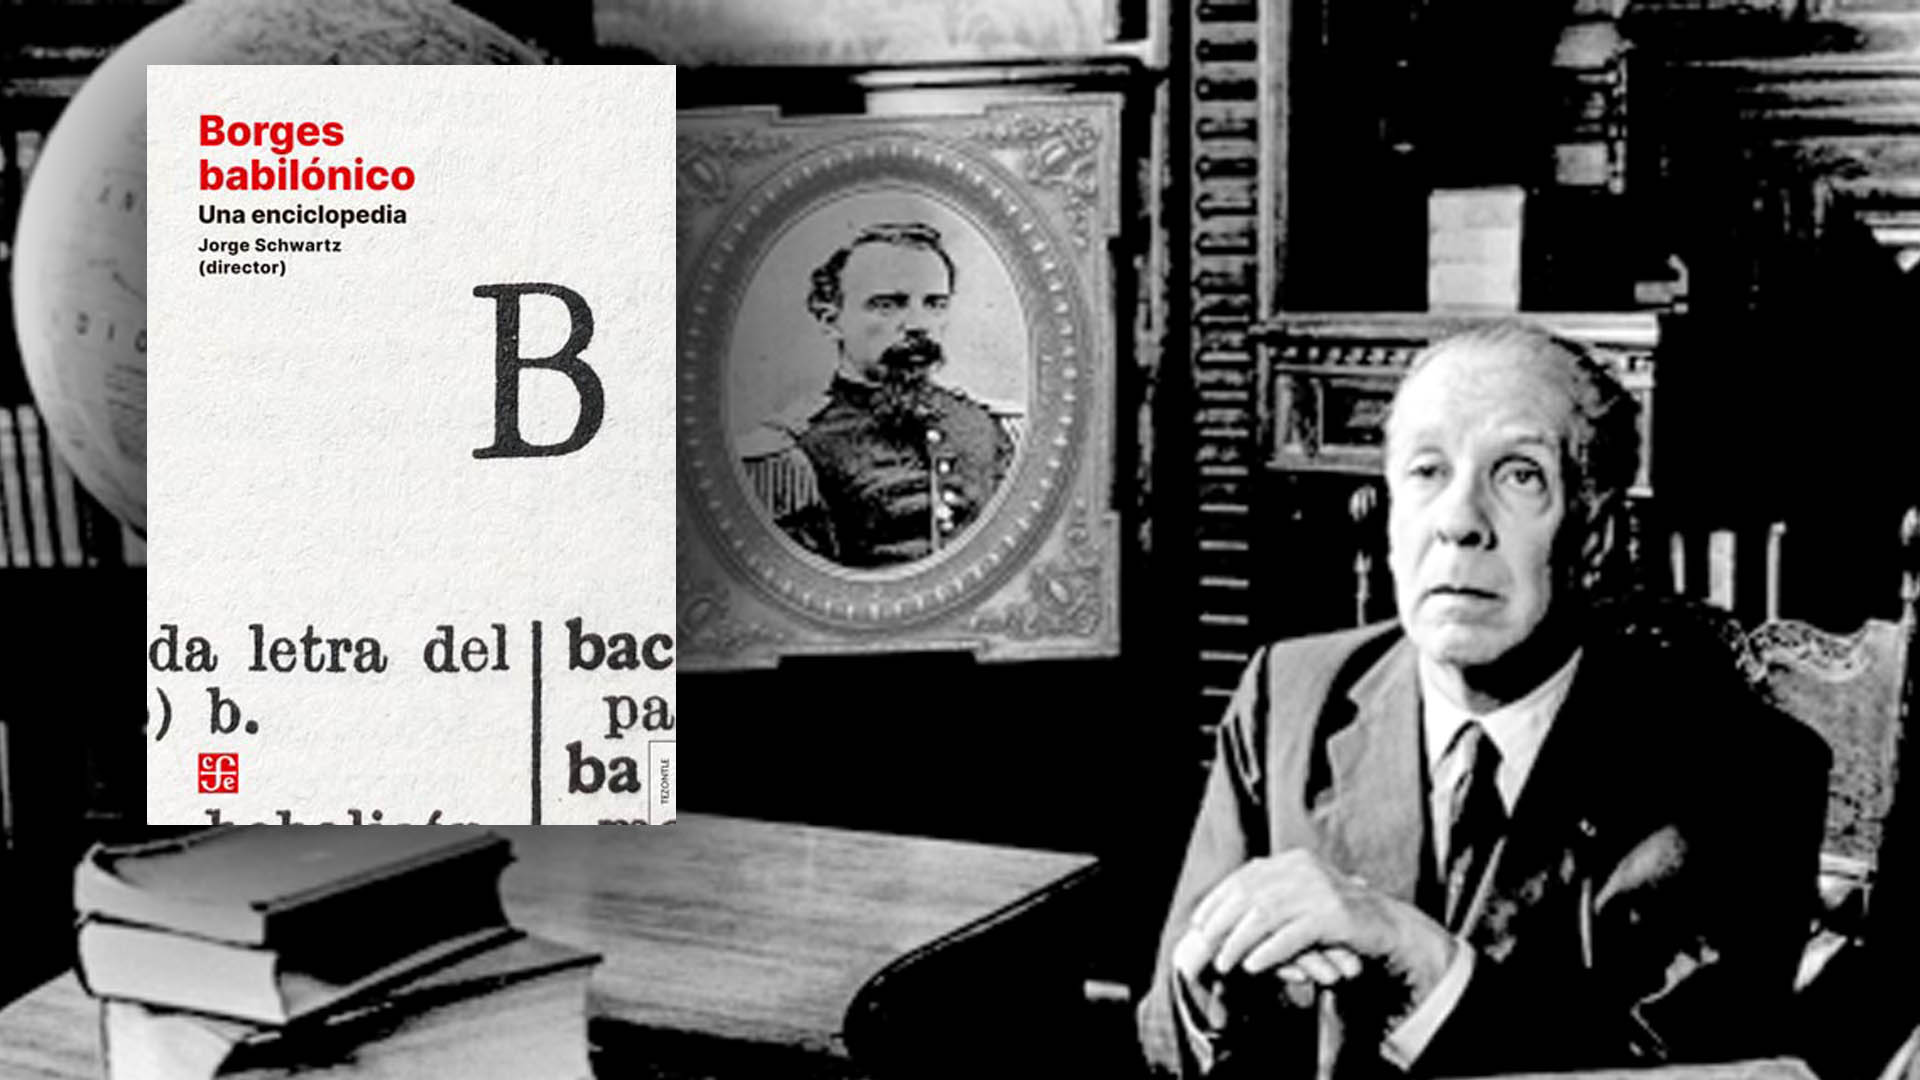 Todo lo que hay que saber sobre Borges en un solo libro: de sus obsesiones e influencias a su supuesta homofobia